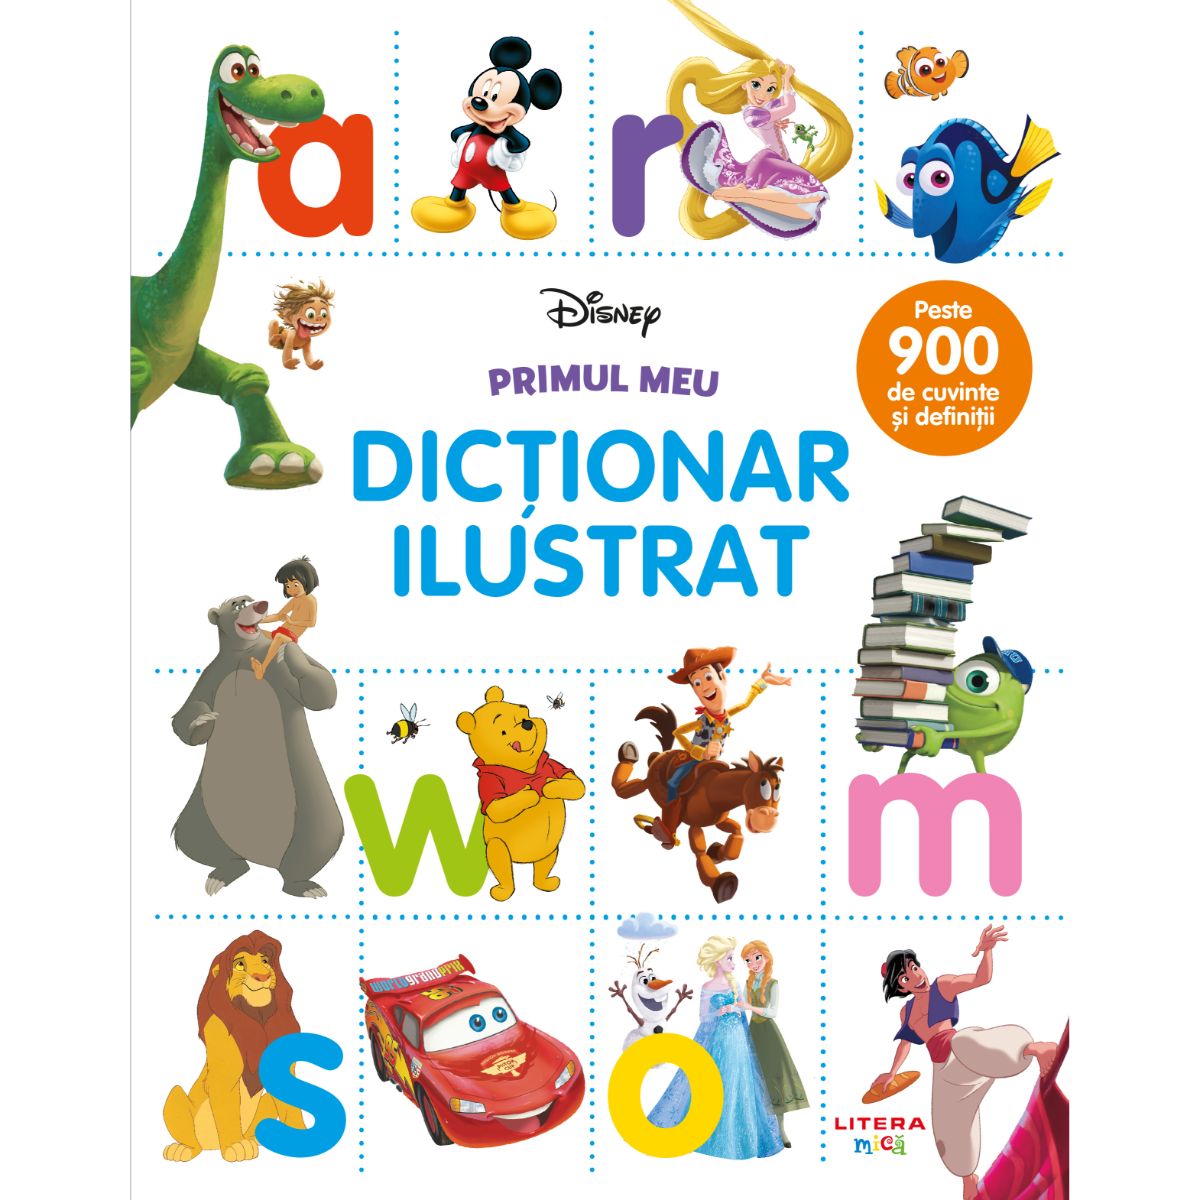 Disney, Primul meu dictionar ilustrat